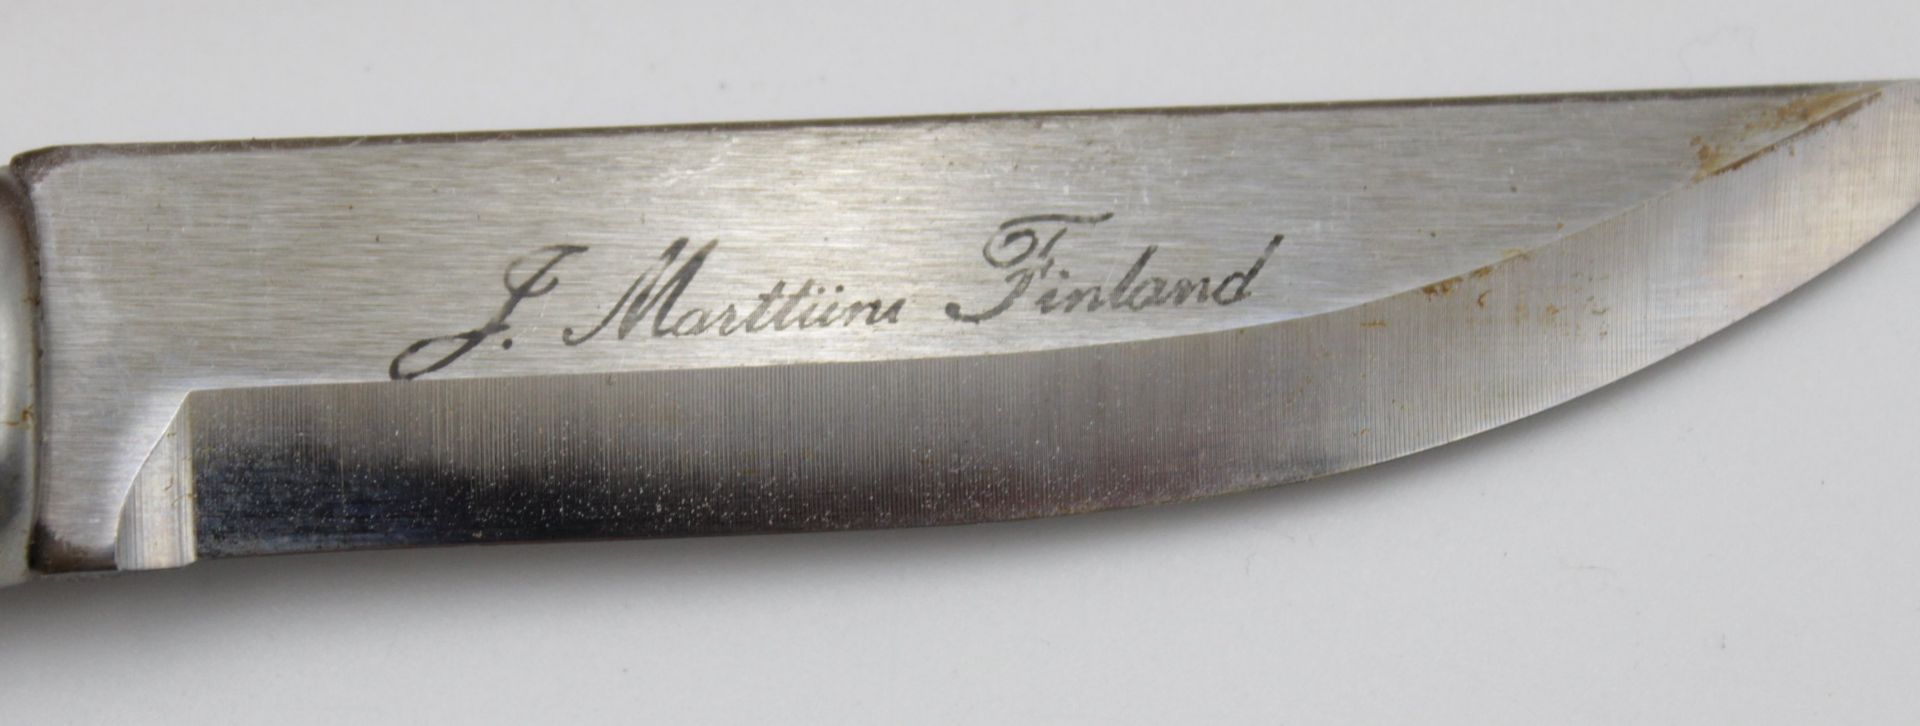 Finndolch, Klinge bez. "J. Marttini Finland", mit Lederscheide, Holzgriff, L-19,5cm. - Bild 3 aus 4